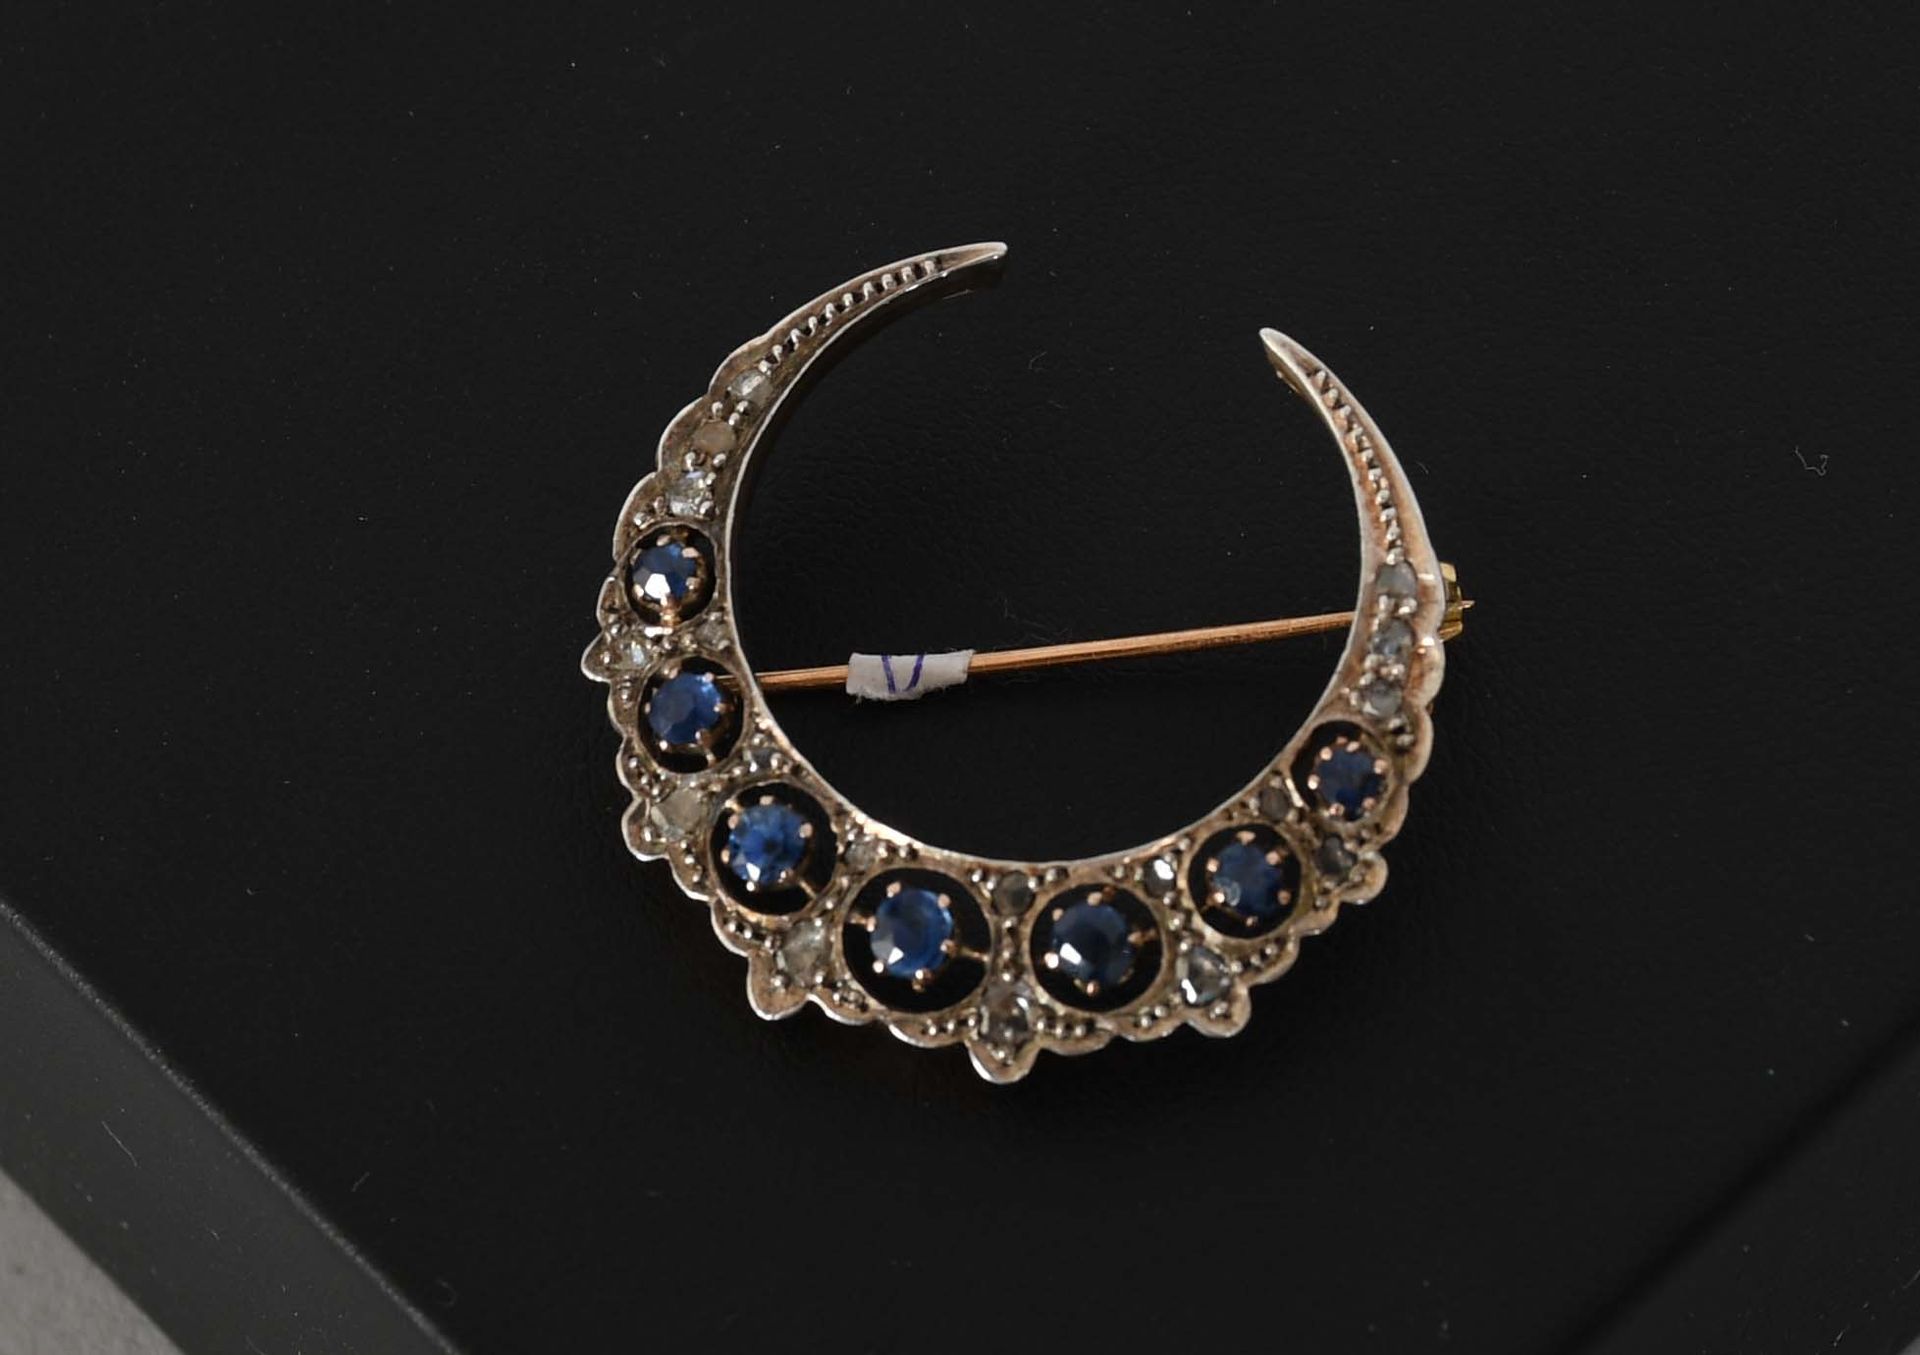 Null 瑰宝

古董新月胸针，黄金和银，镶嵌钻石和蓝色宝石（可能是蓝宝石）。